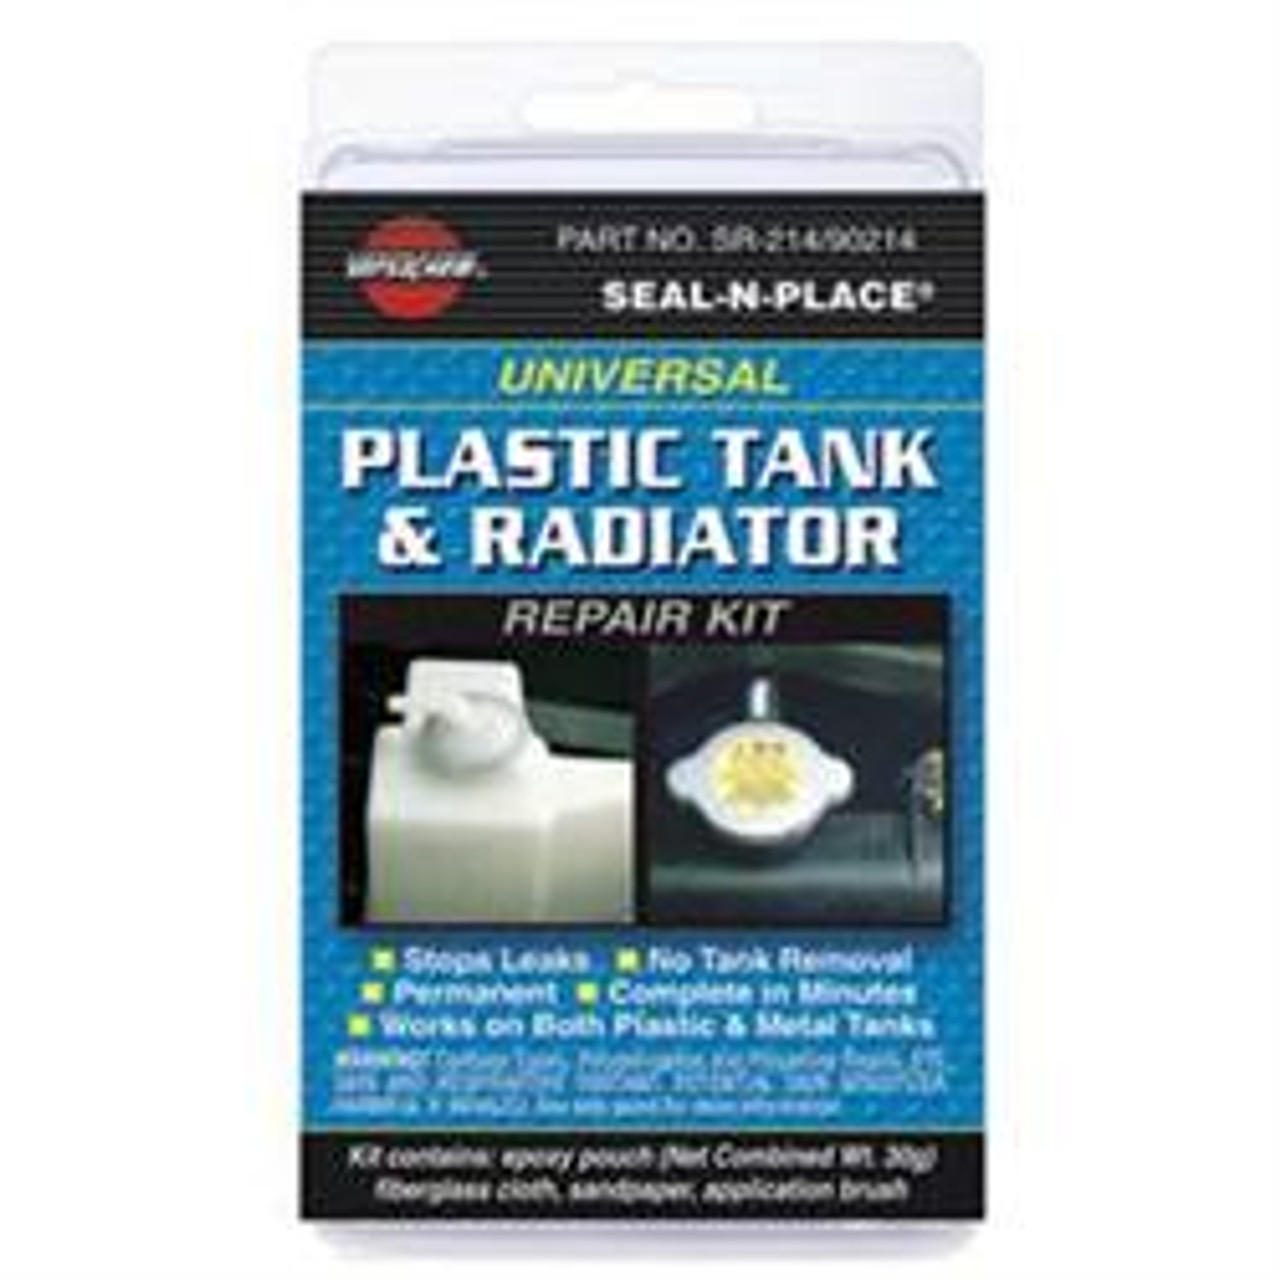  Plastic Tank Repair Kit (13-1004)